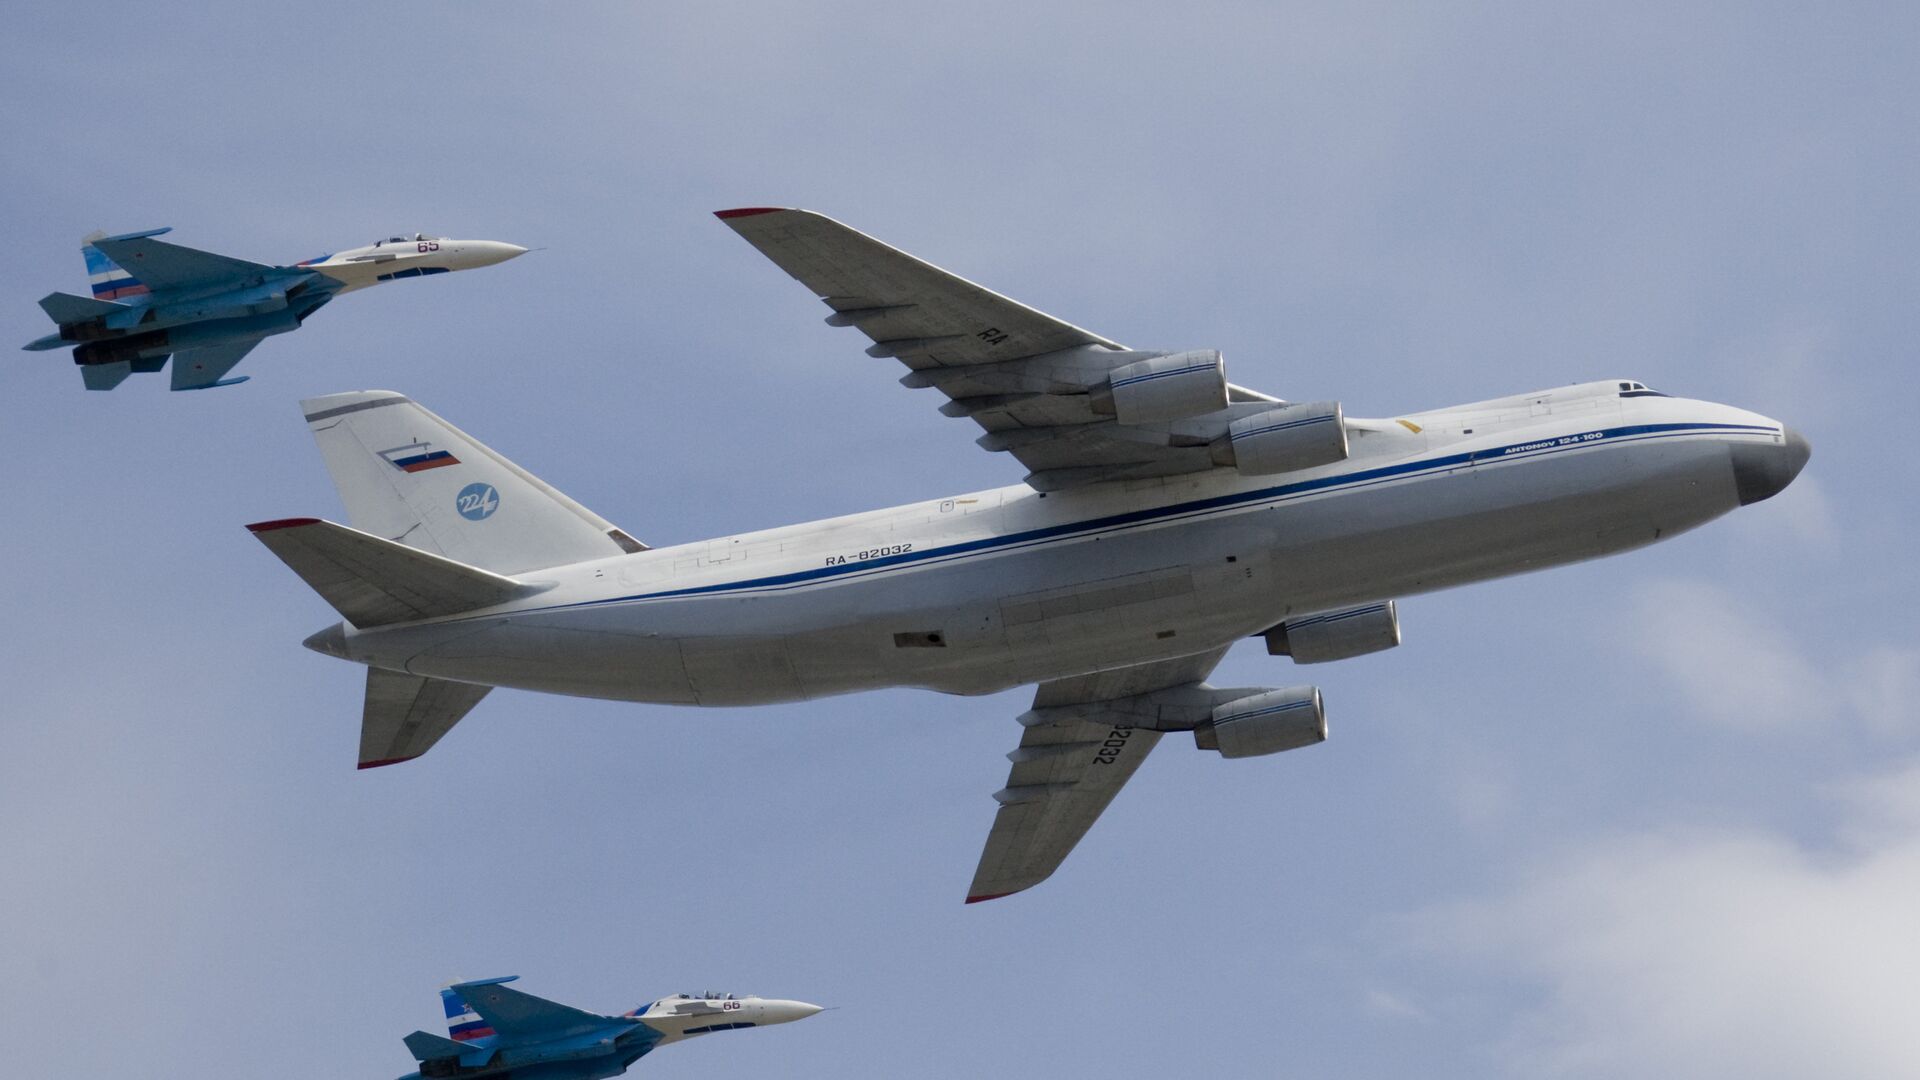 Стратегический военно-транспортный самолет Ан-124 Руслан в сопровождении двух истребителей Су-27 - РИА Новости, 1920, 30.08.2019